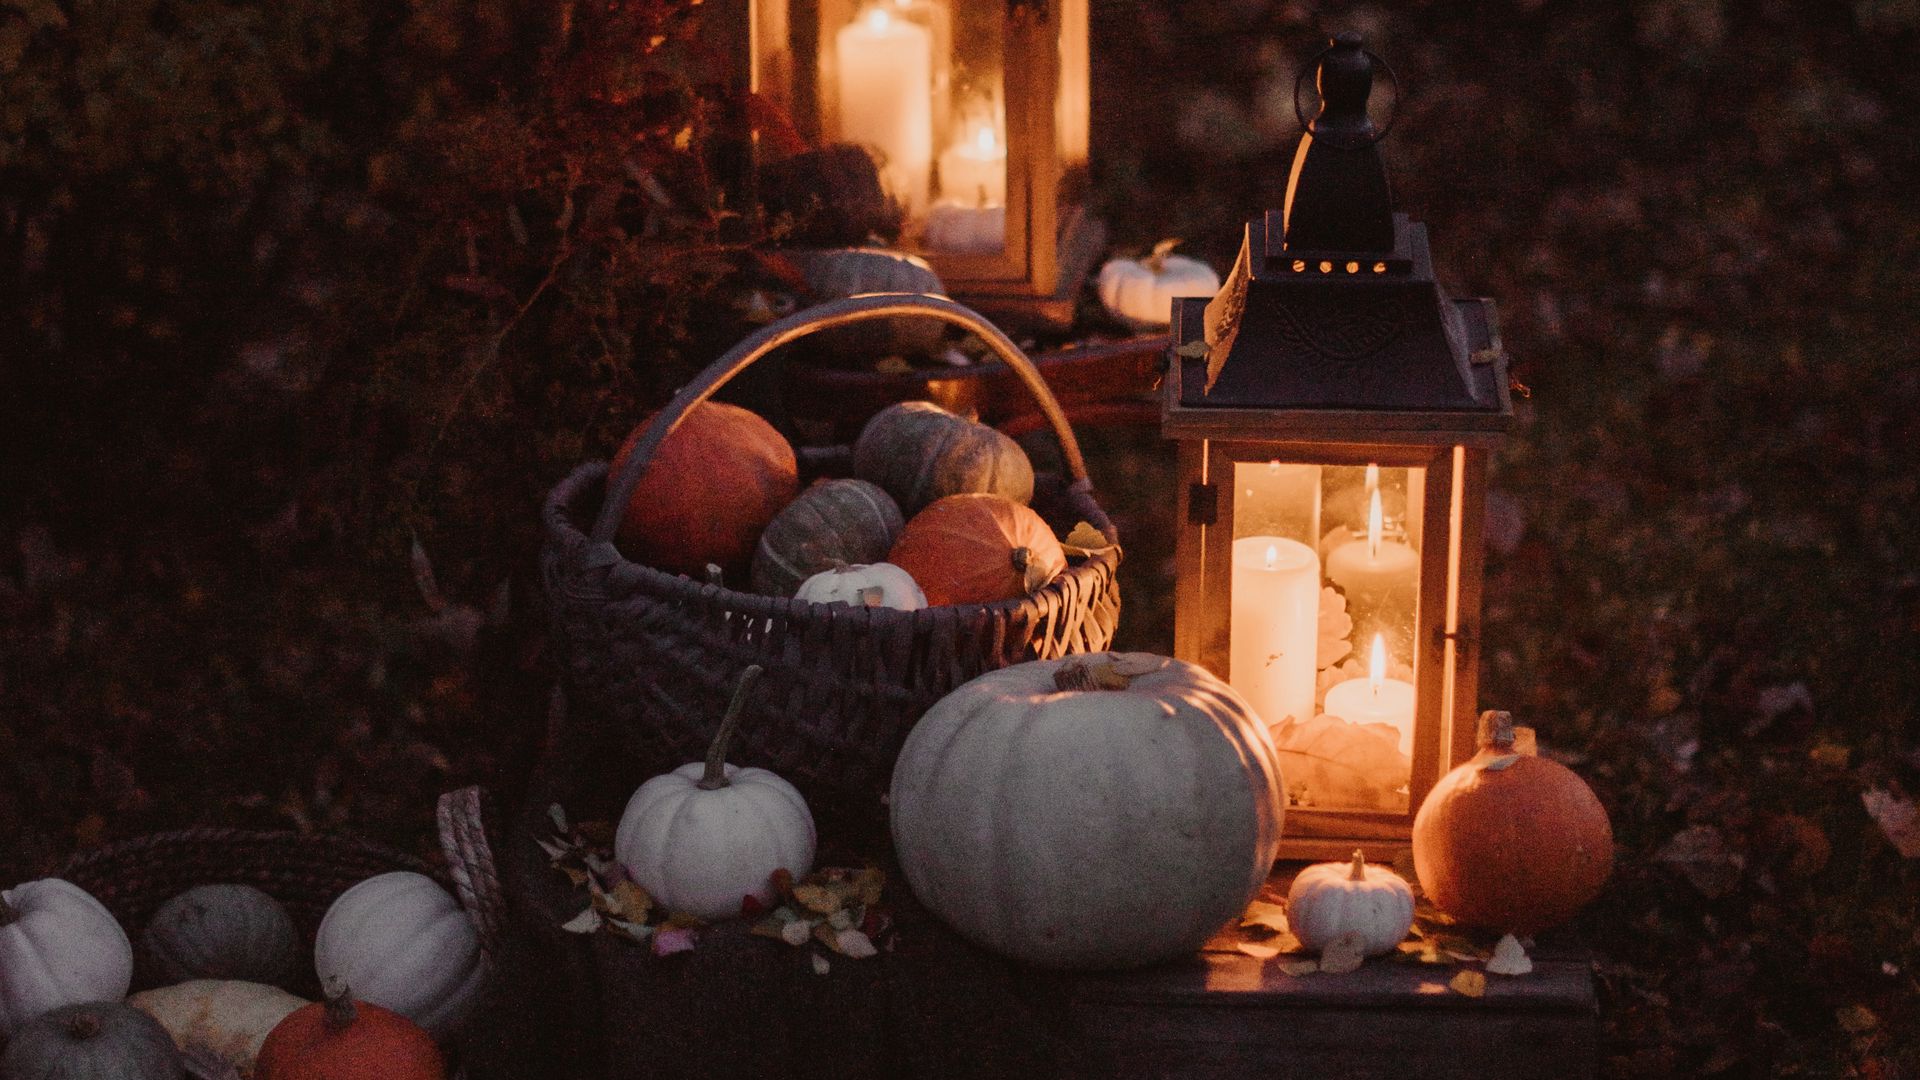 Download wallpaper 1920x1080 pumpkin, basket, lights, autumn, candles, light full hd, hdtv, fhd, 1080p HD background